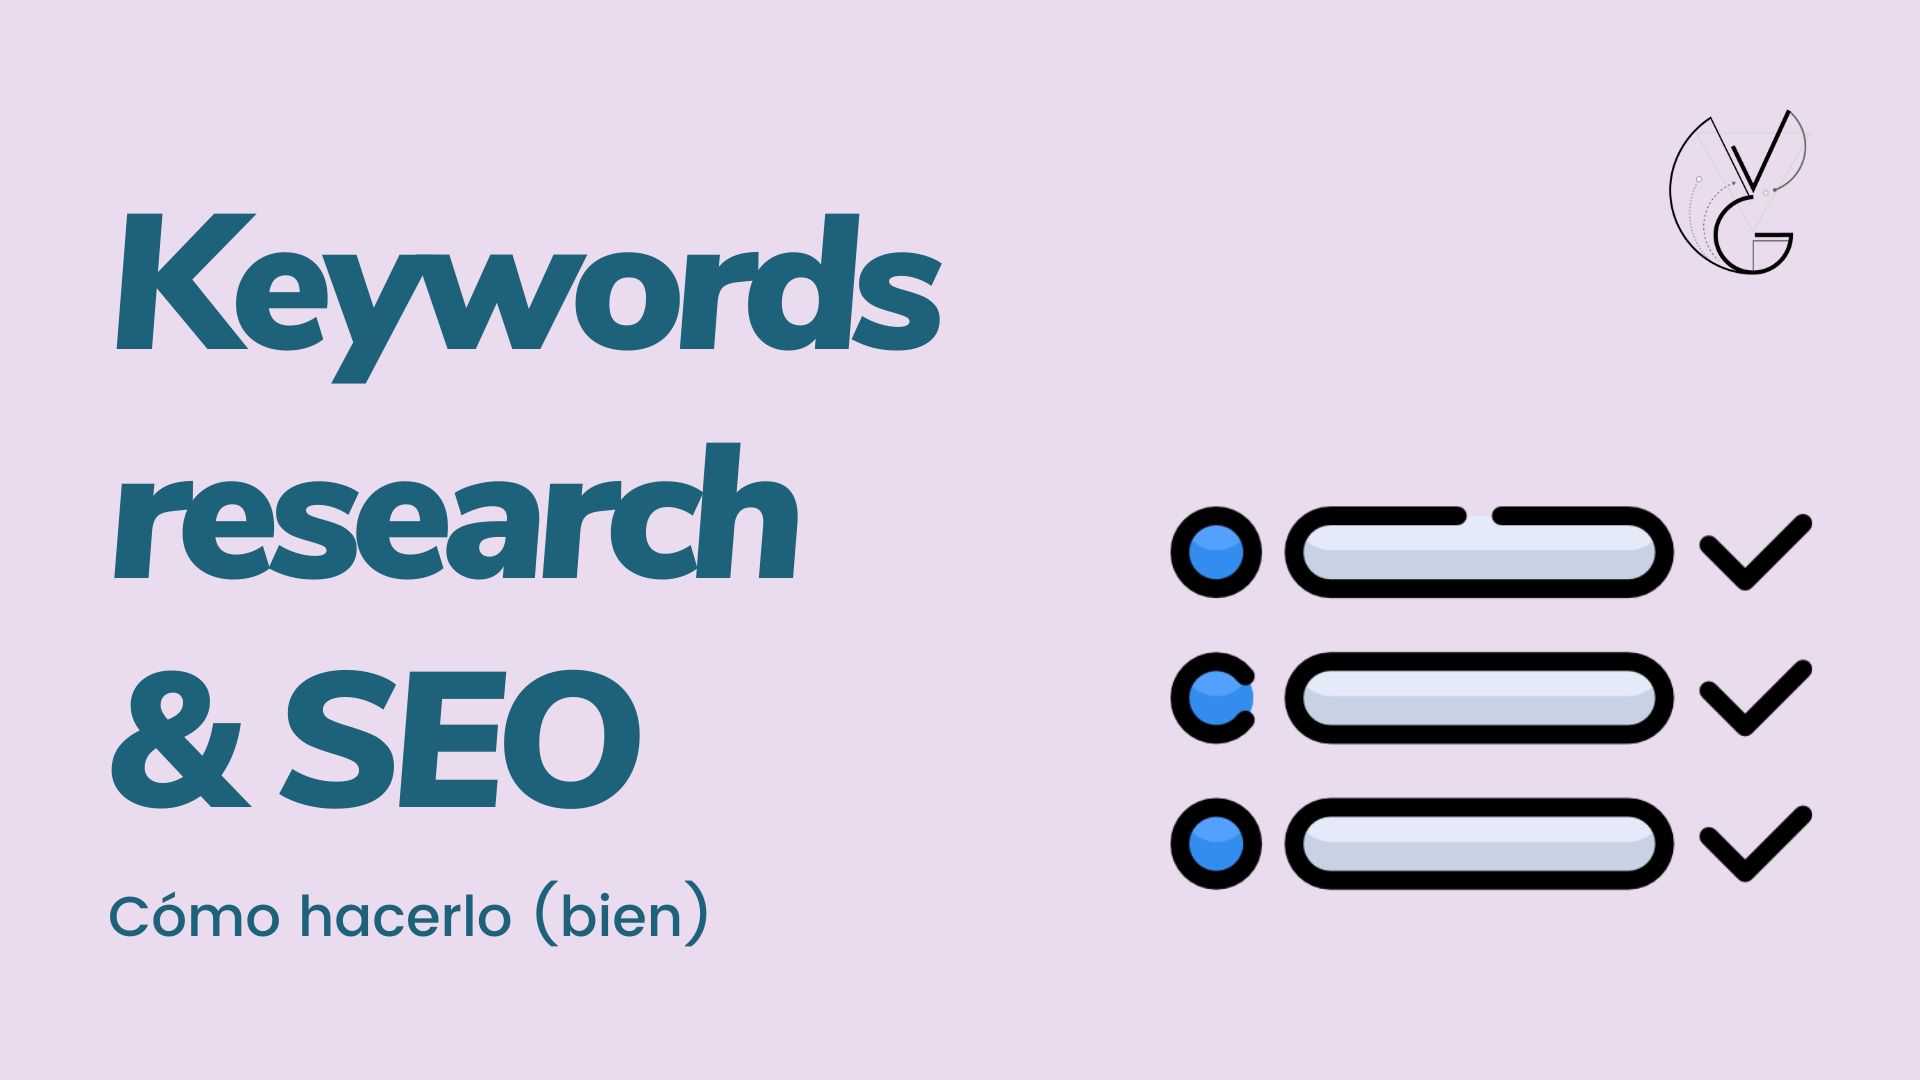 keywords research para seo como hacerlo bien oficial